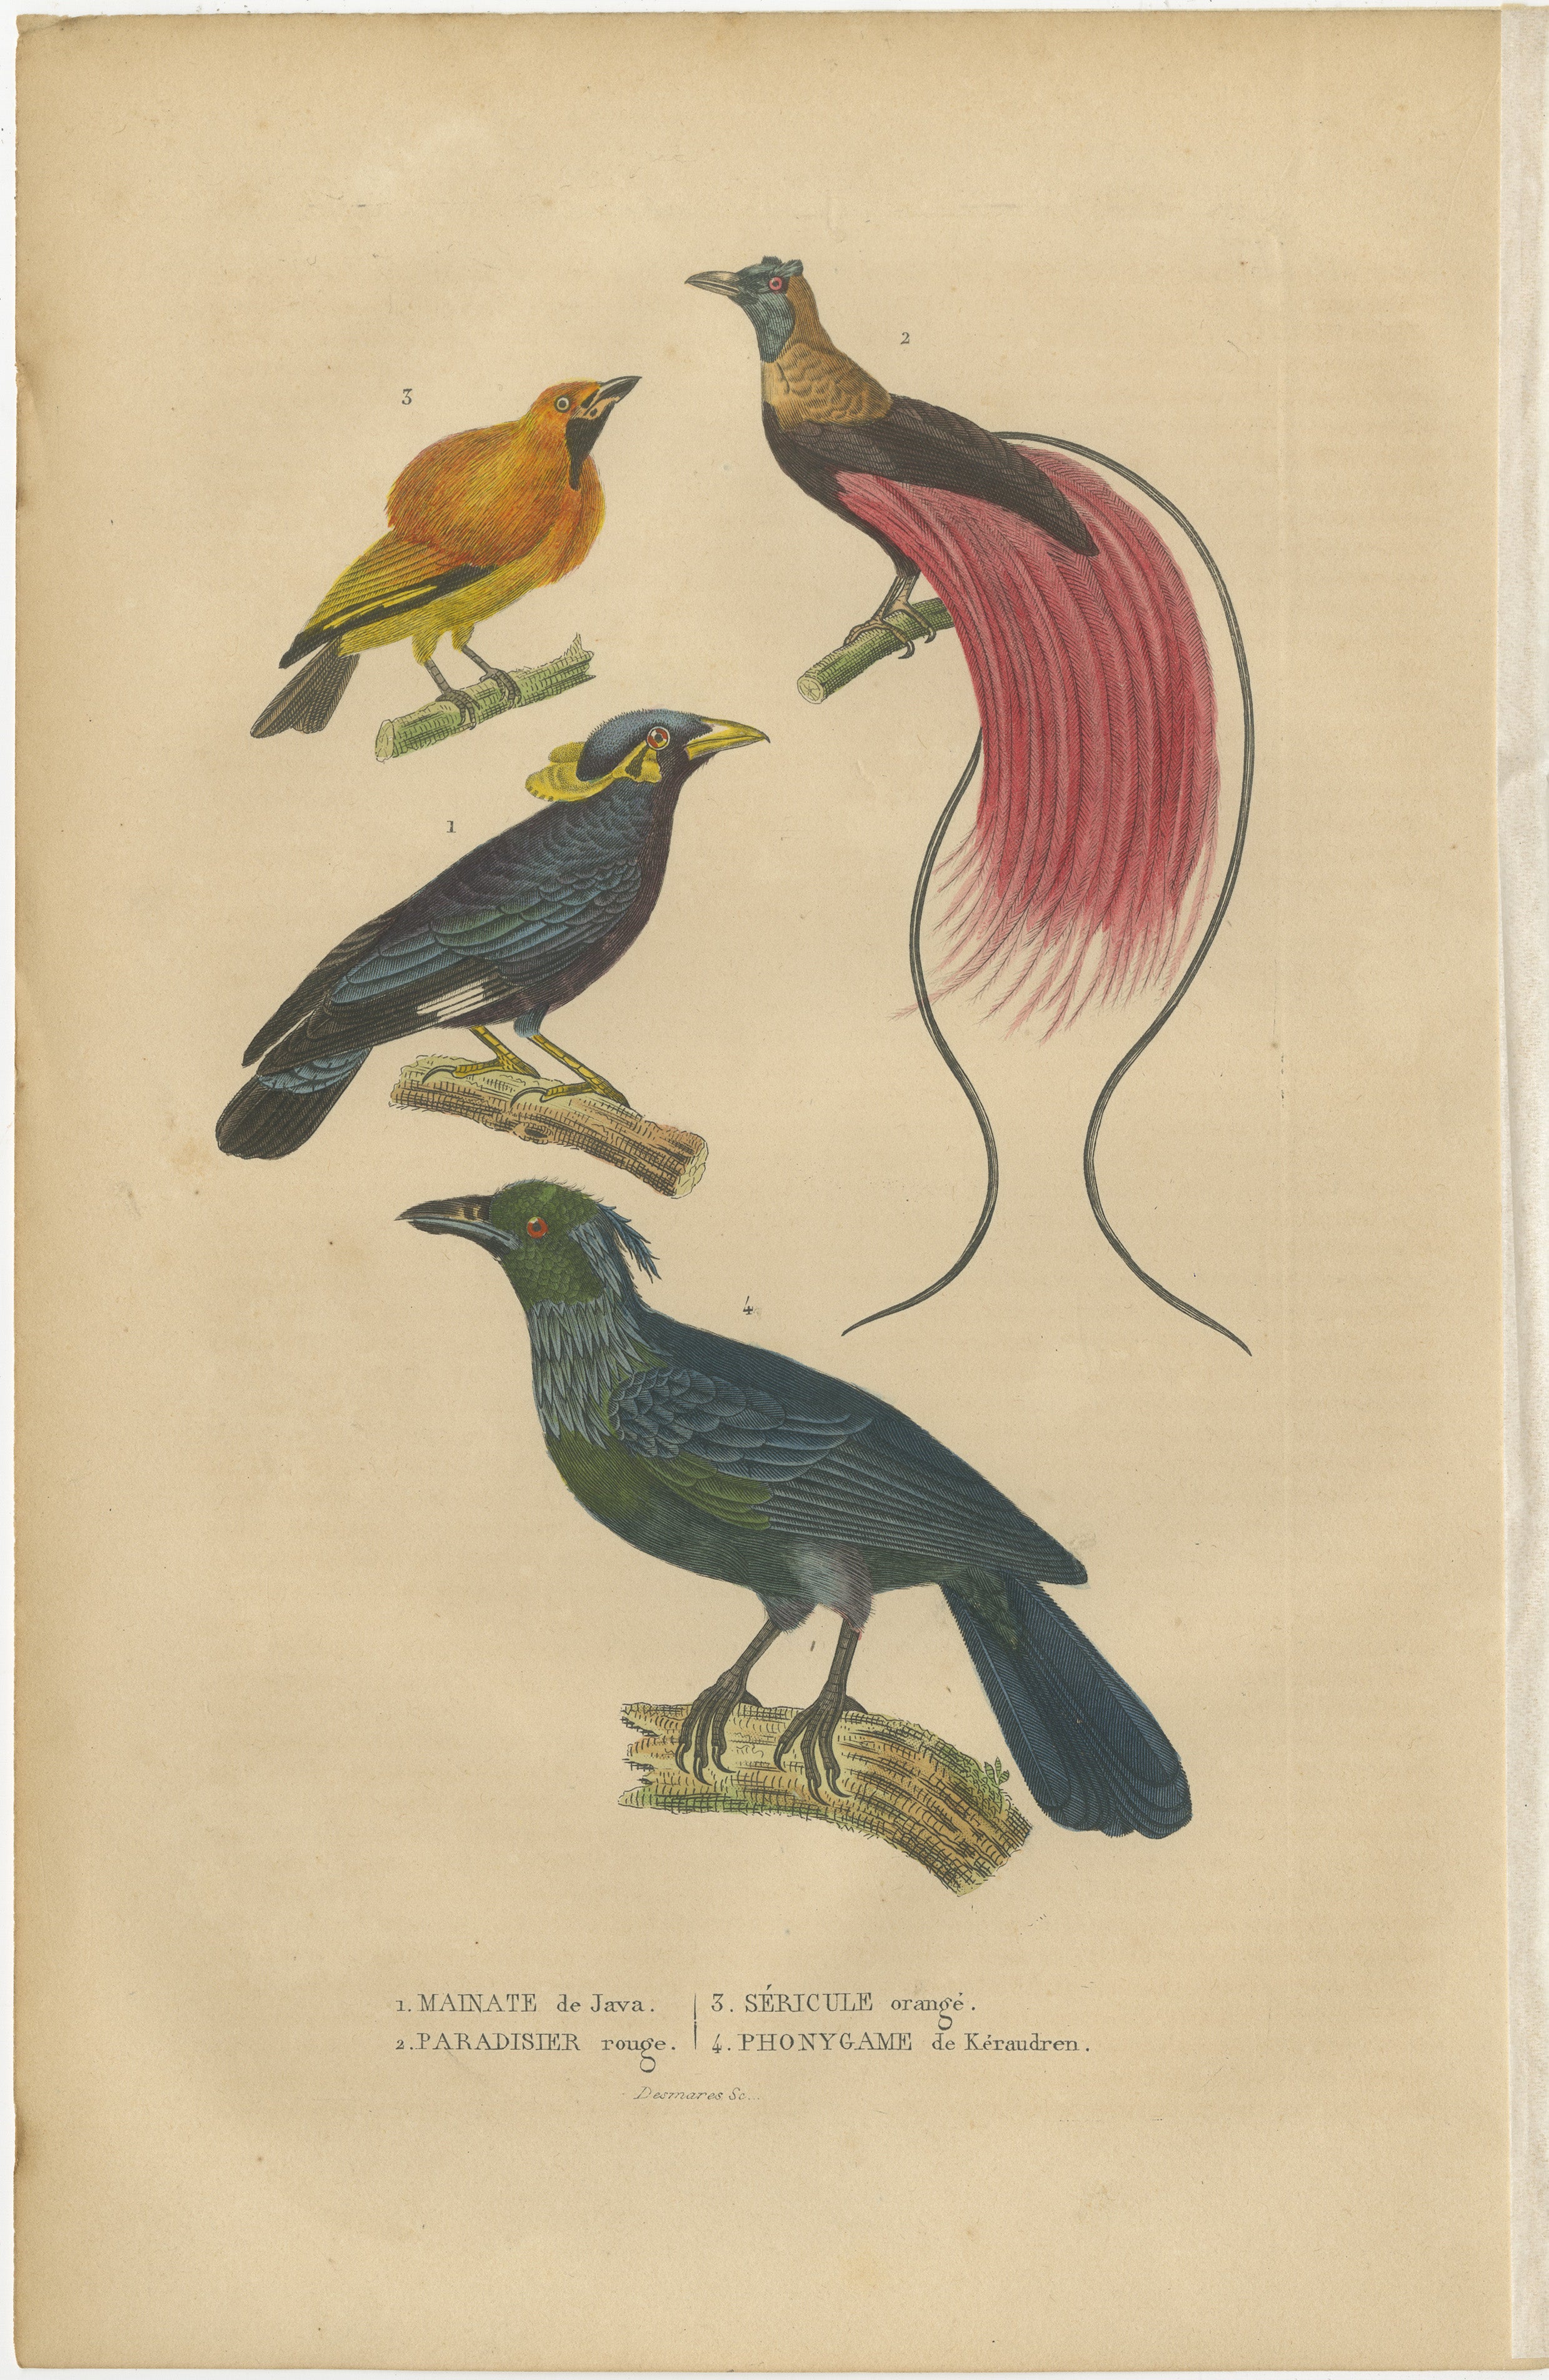 Belle estampe représentant les oiseaux d'Asie, dont le célèbre oiseau de paradis.

Titre : 